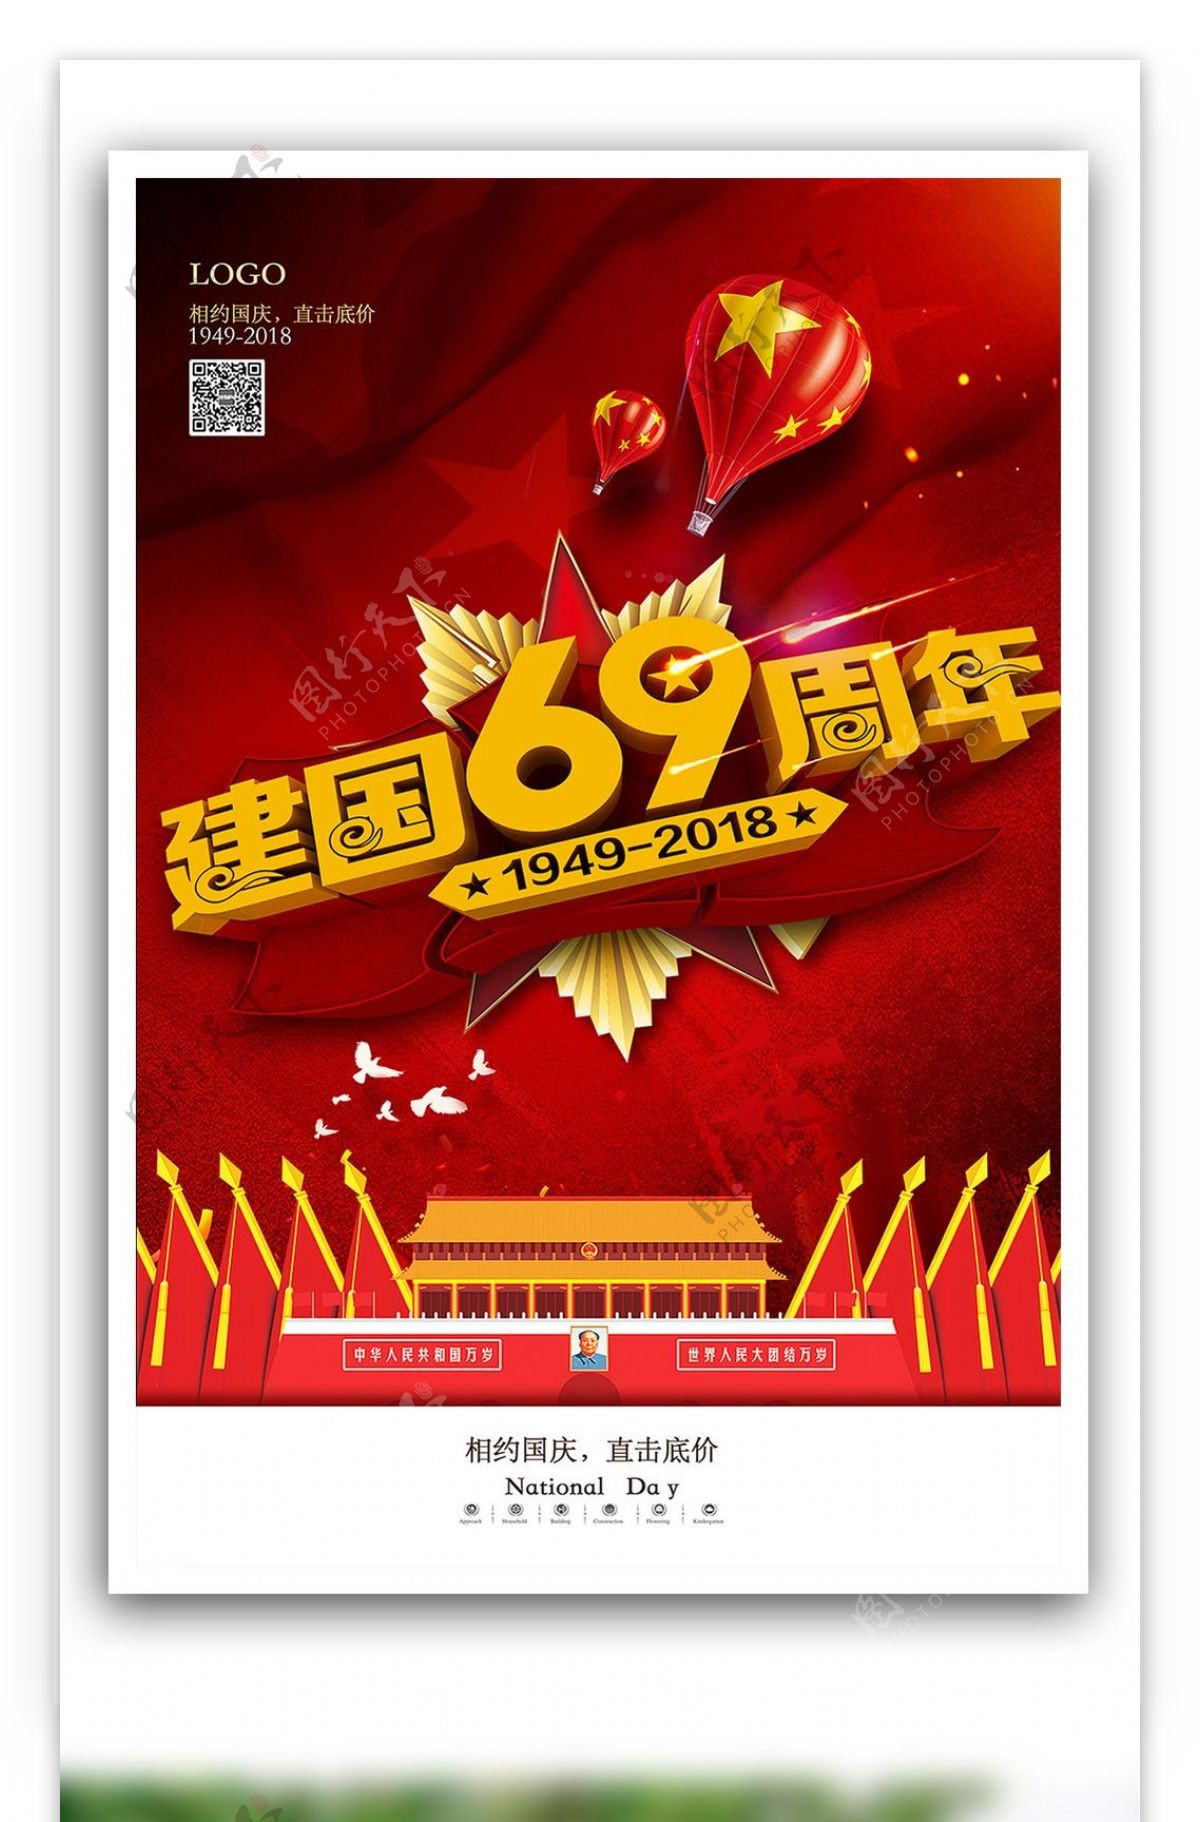 红色大气国庆节促销海报